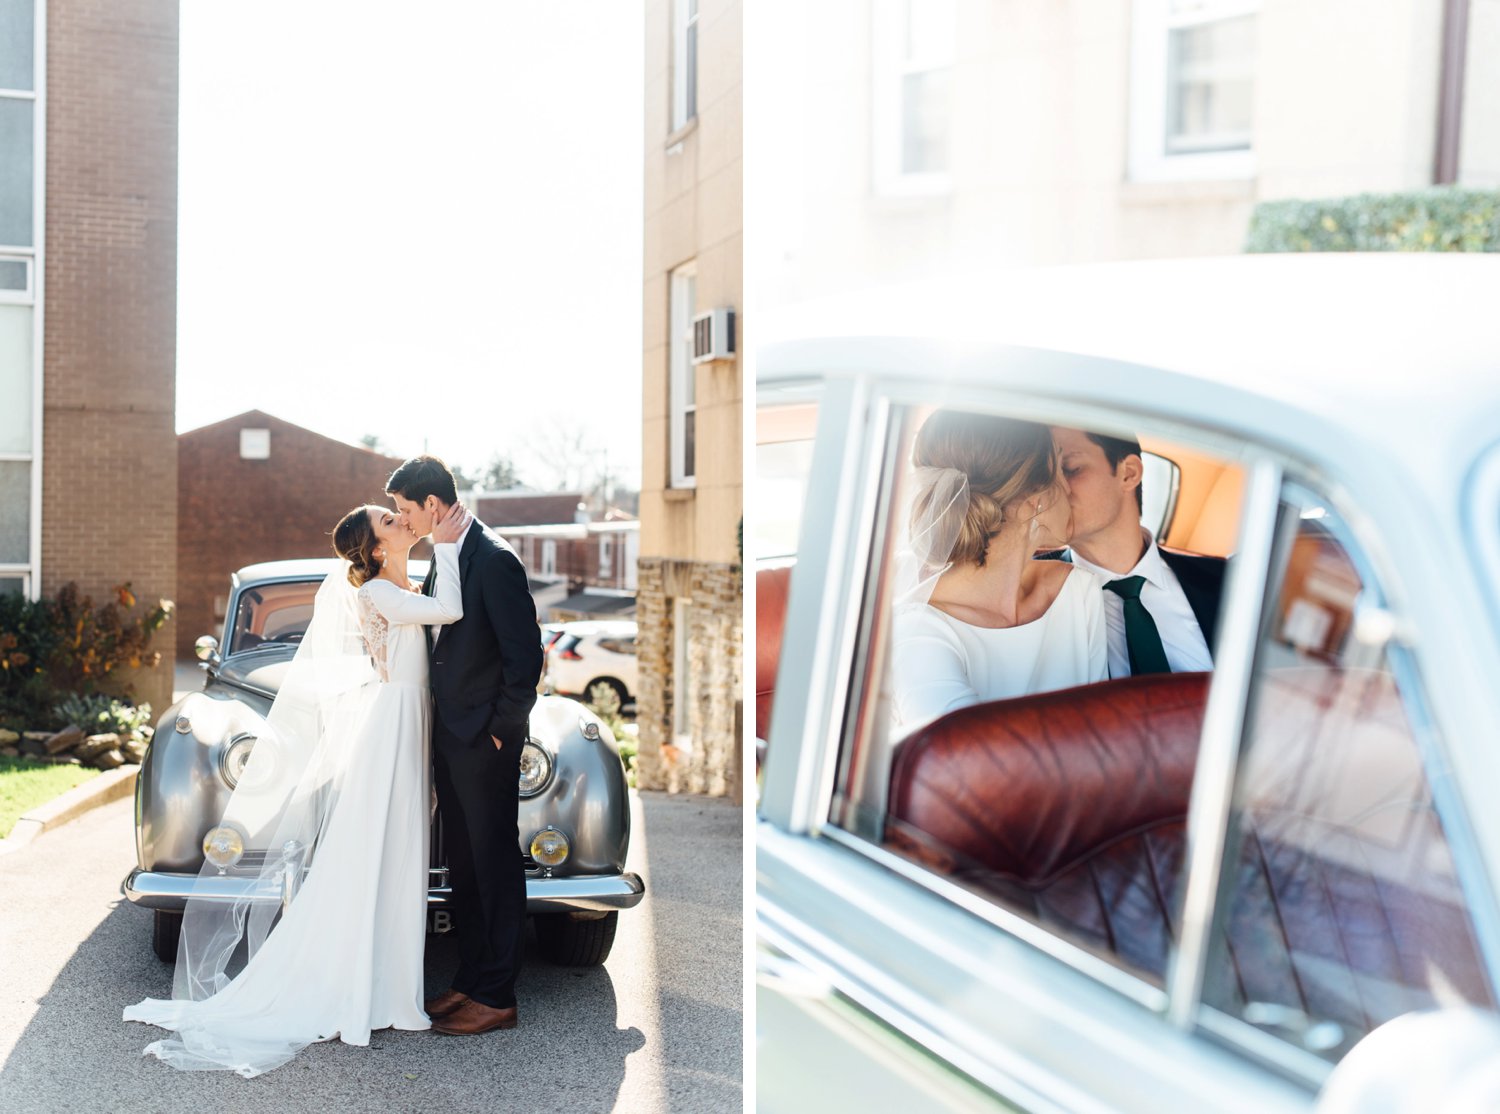 Allison + Jon - Jenkintown Wedding - Philadelphia Wedding Photographer - Alison Dunn Photography photo